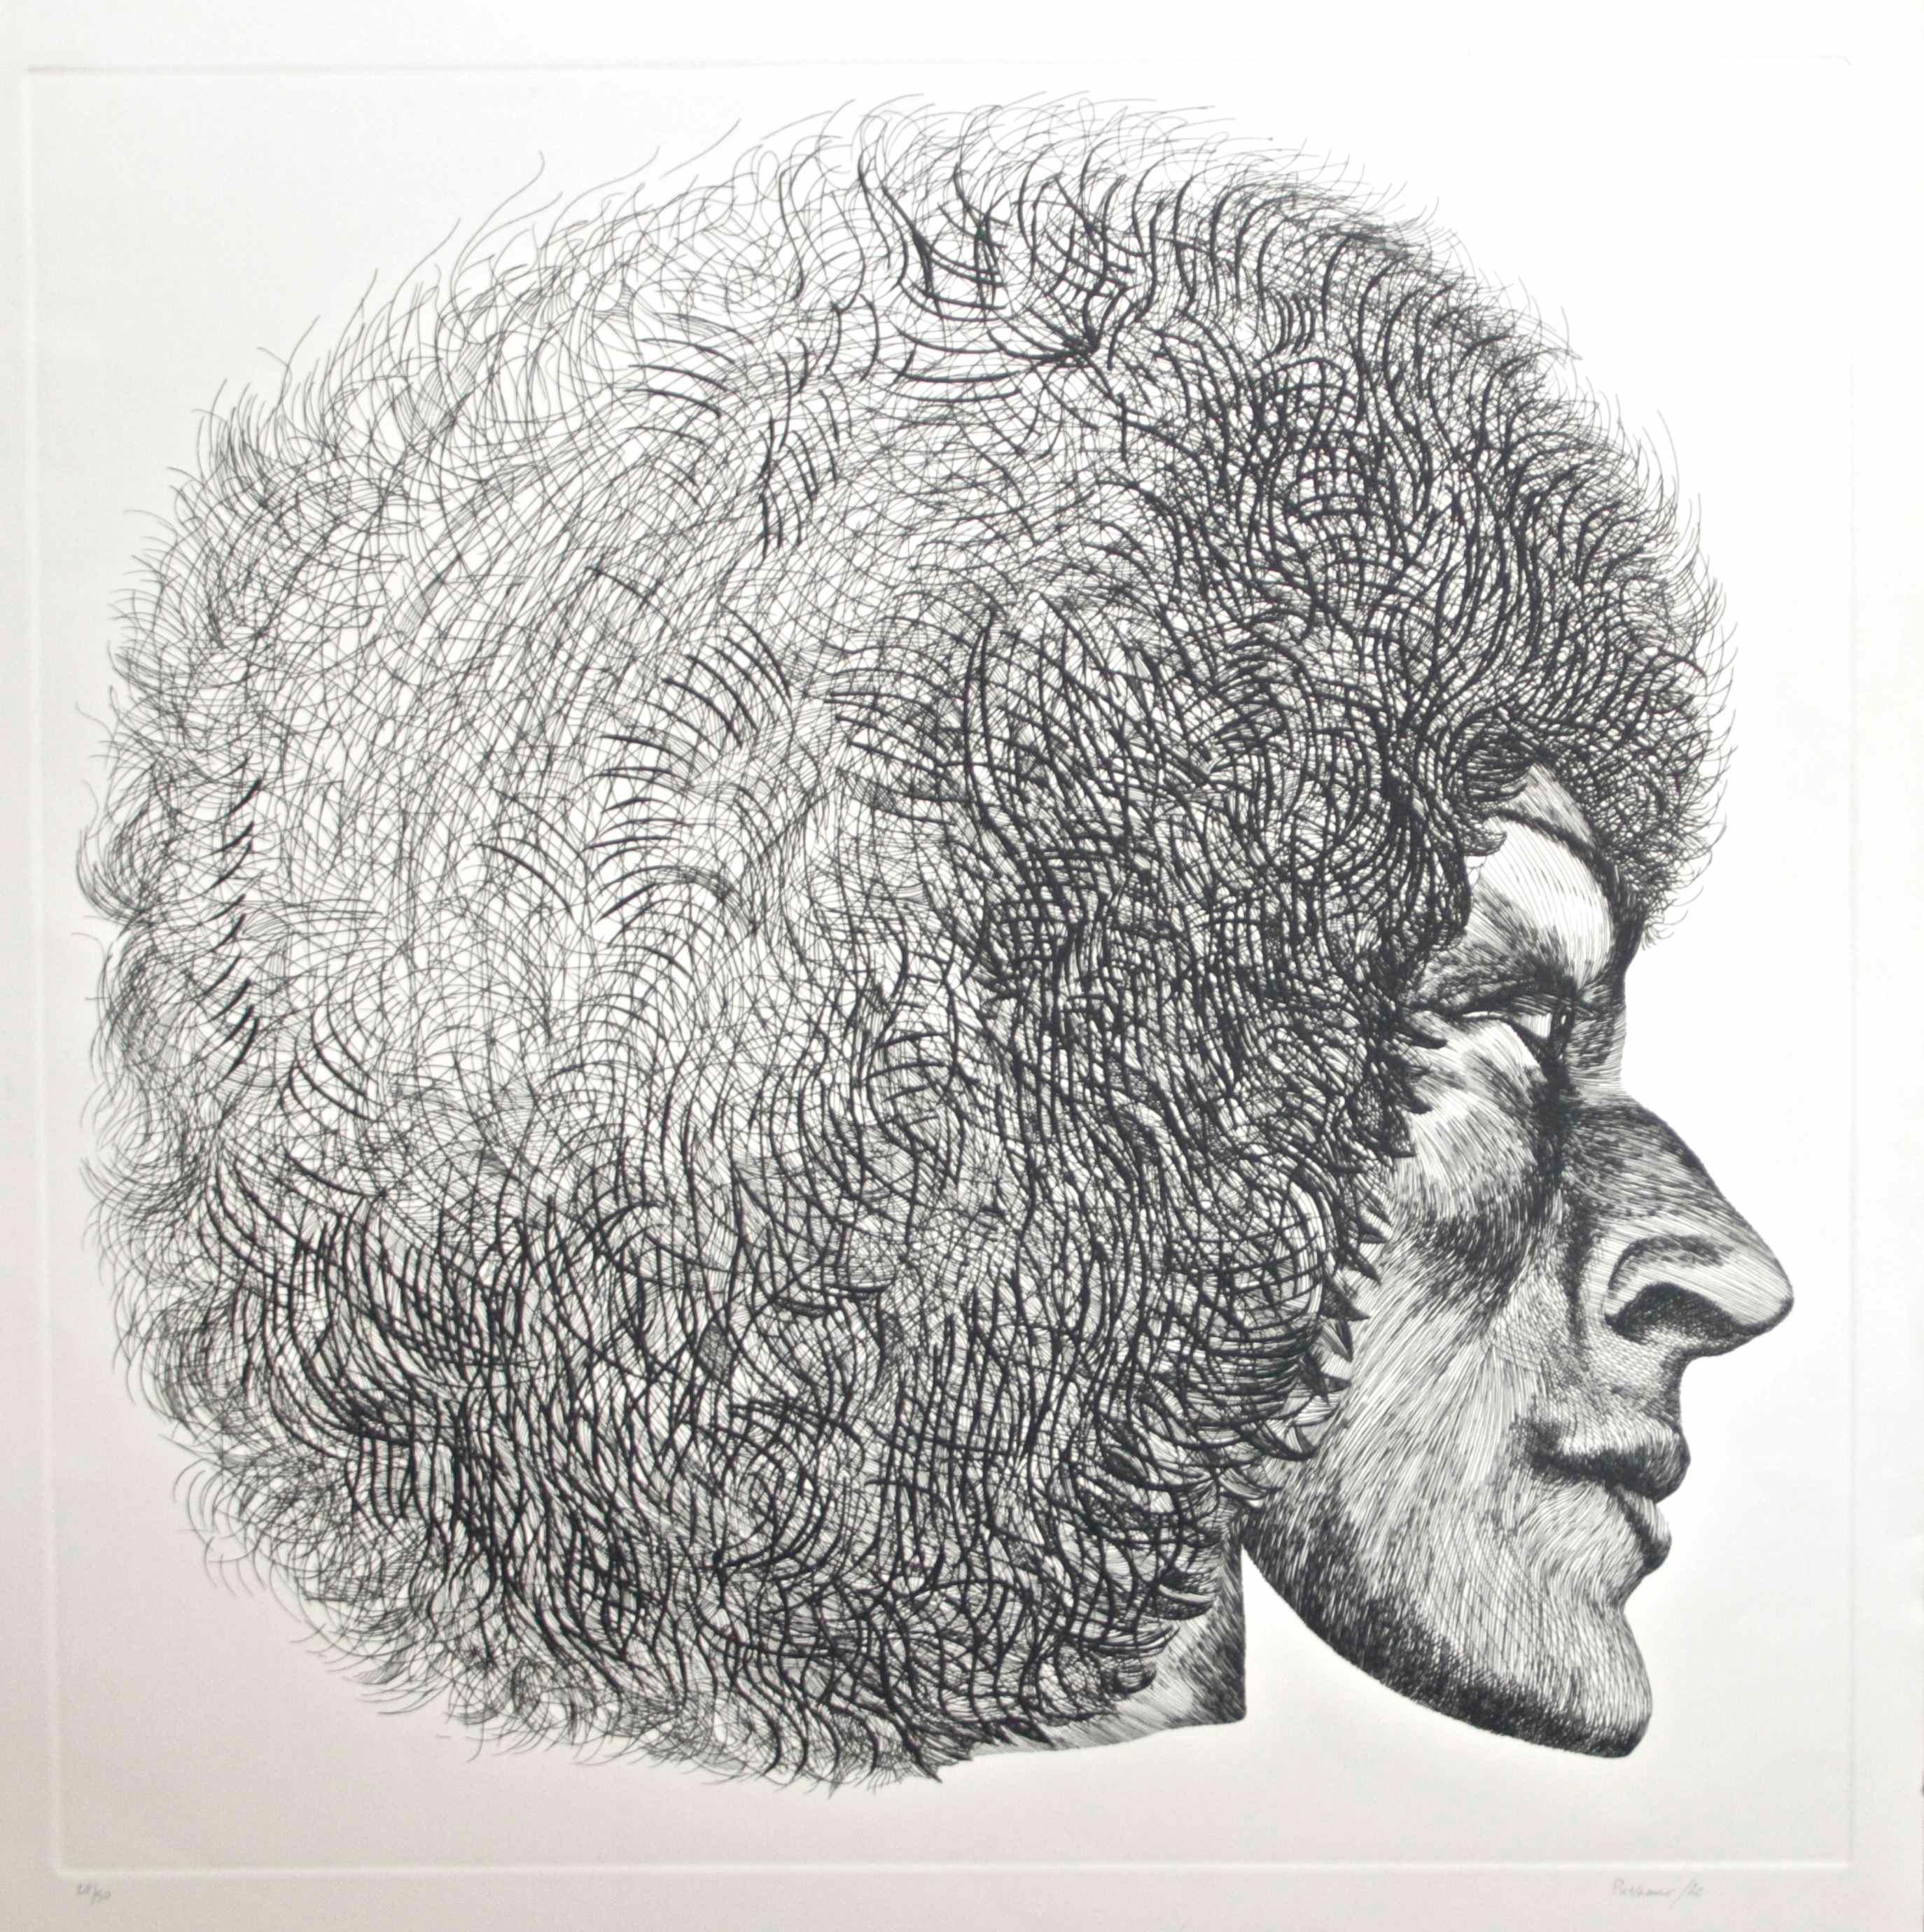 Profile - Original Etching by Giacomo Porzano - 1972